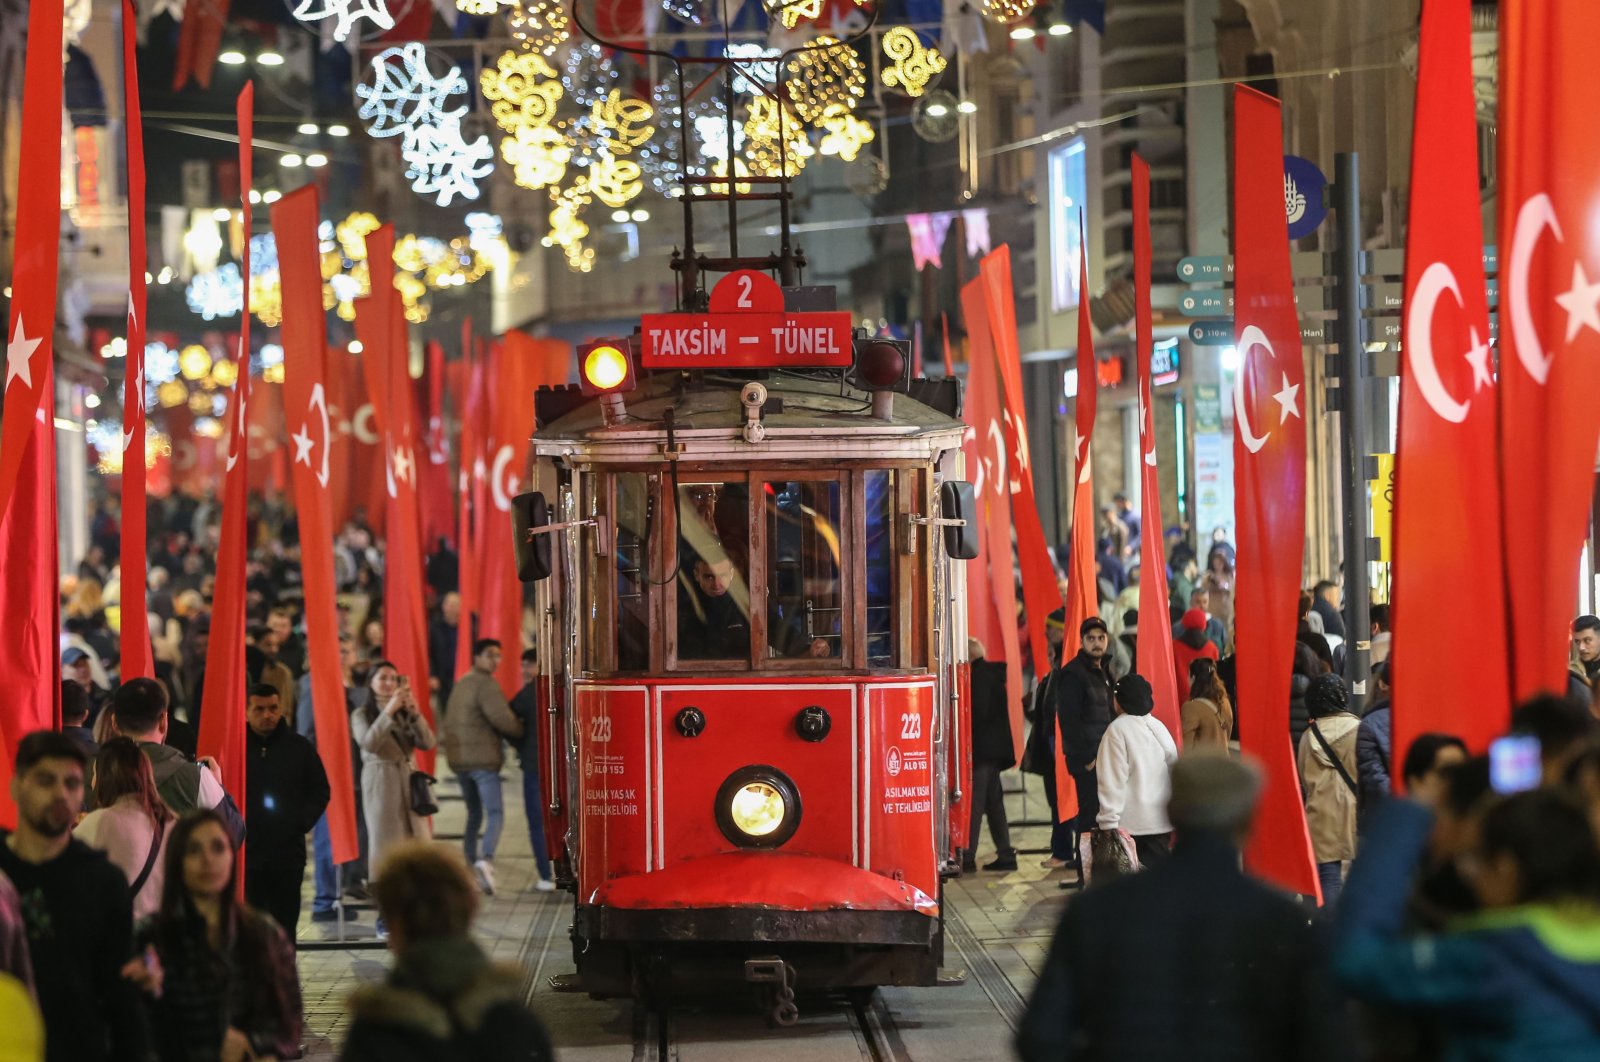 Turis tak gentar, merasa aman setelah serangan teror Istanbul